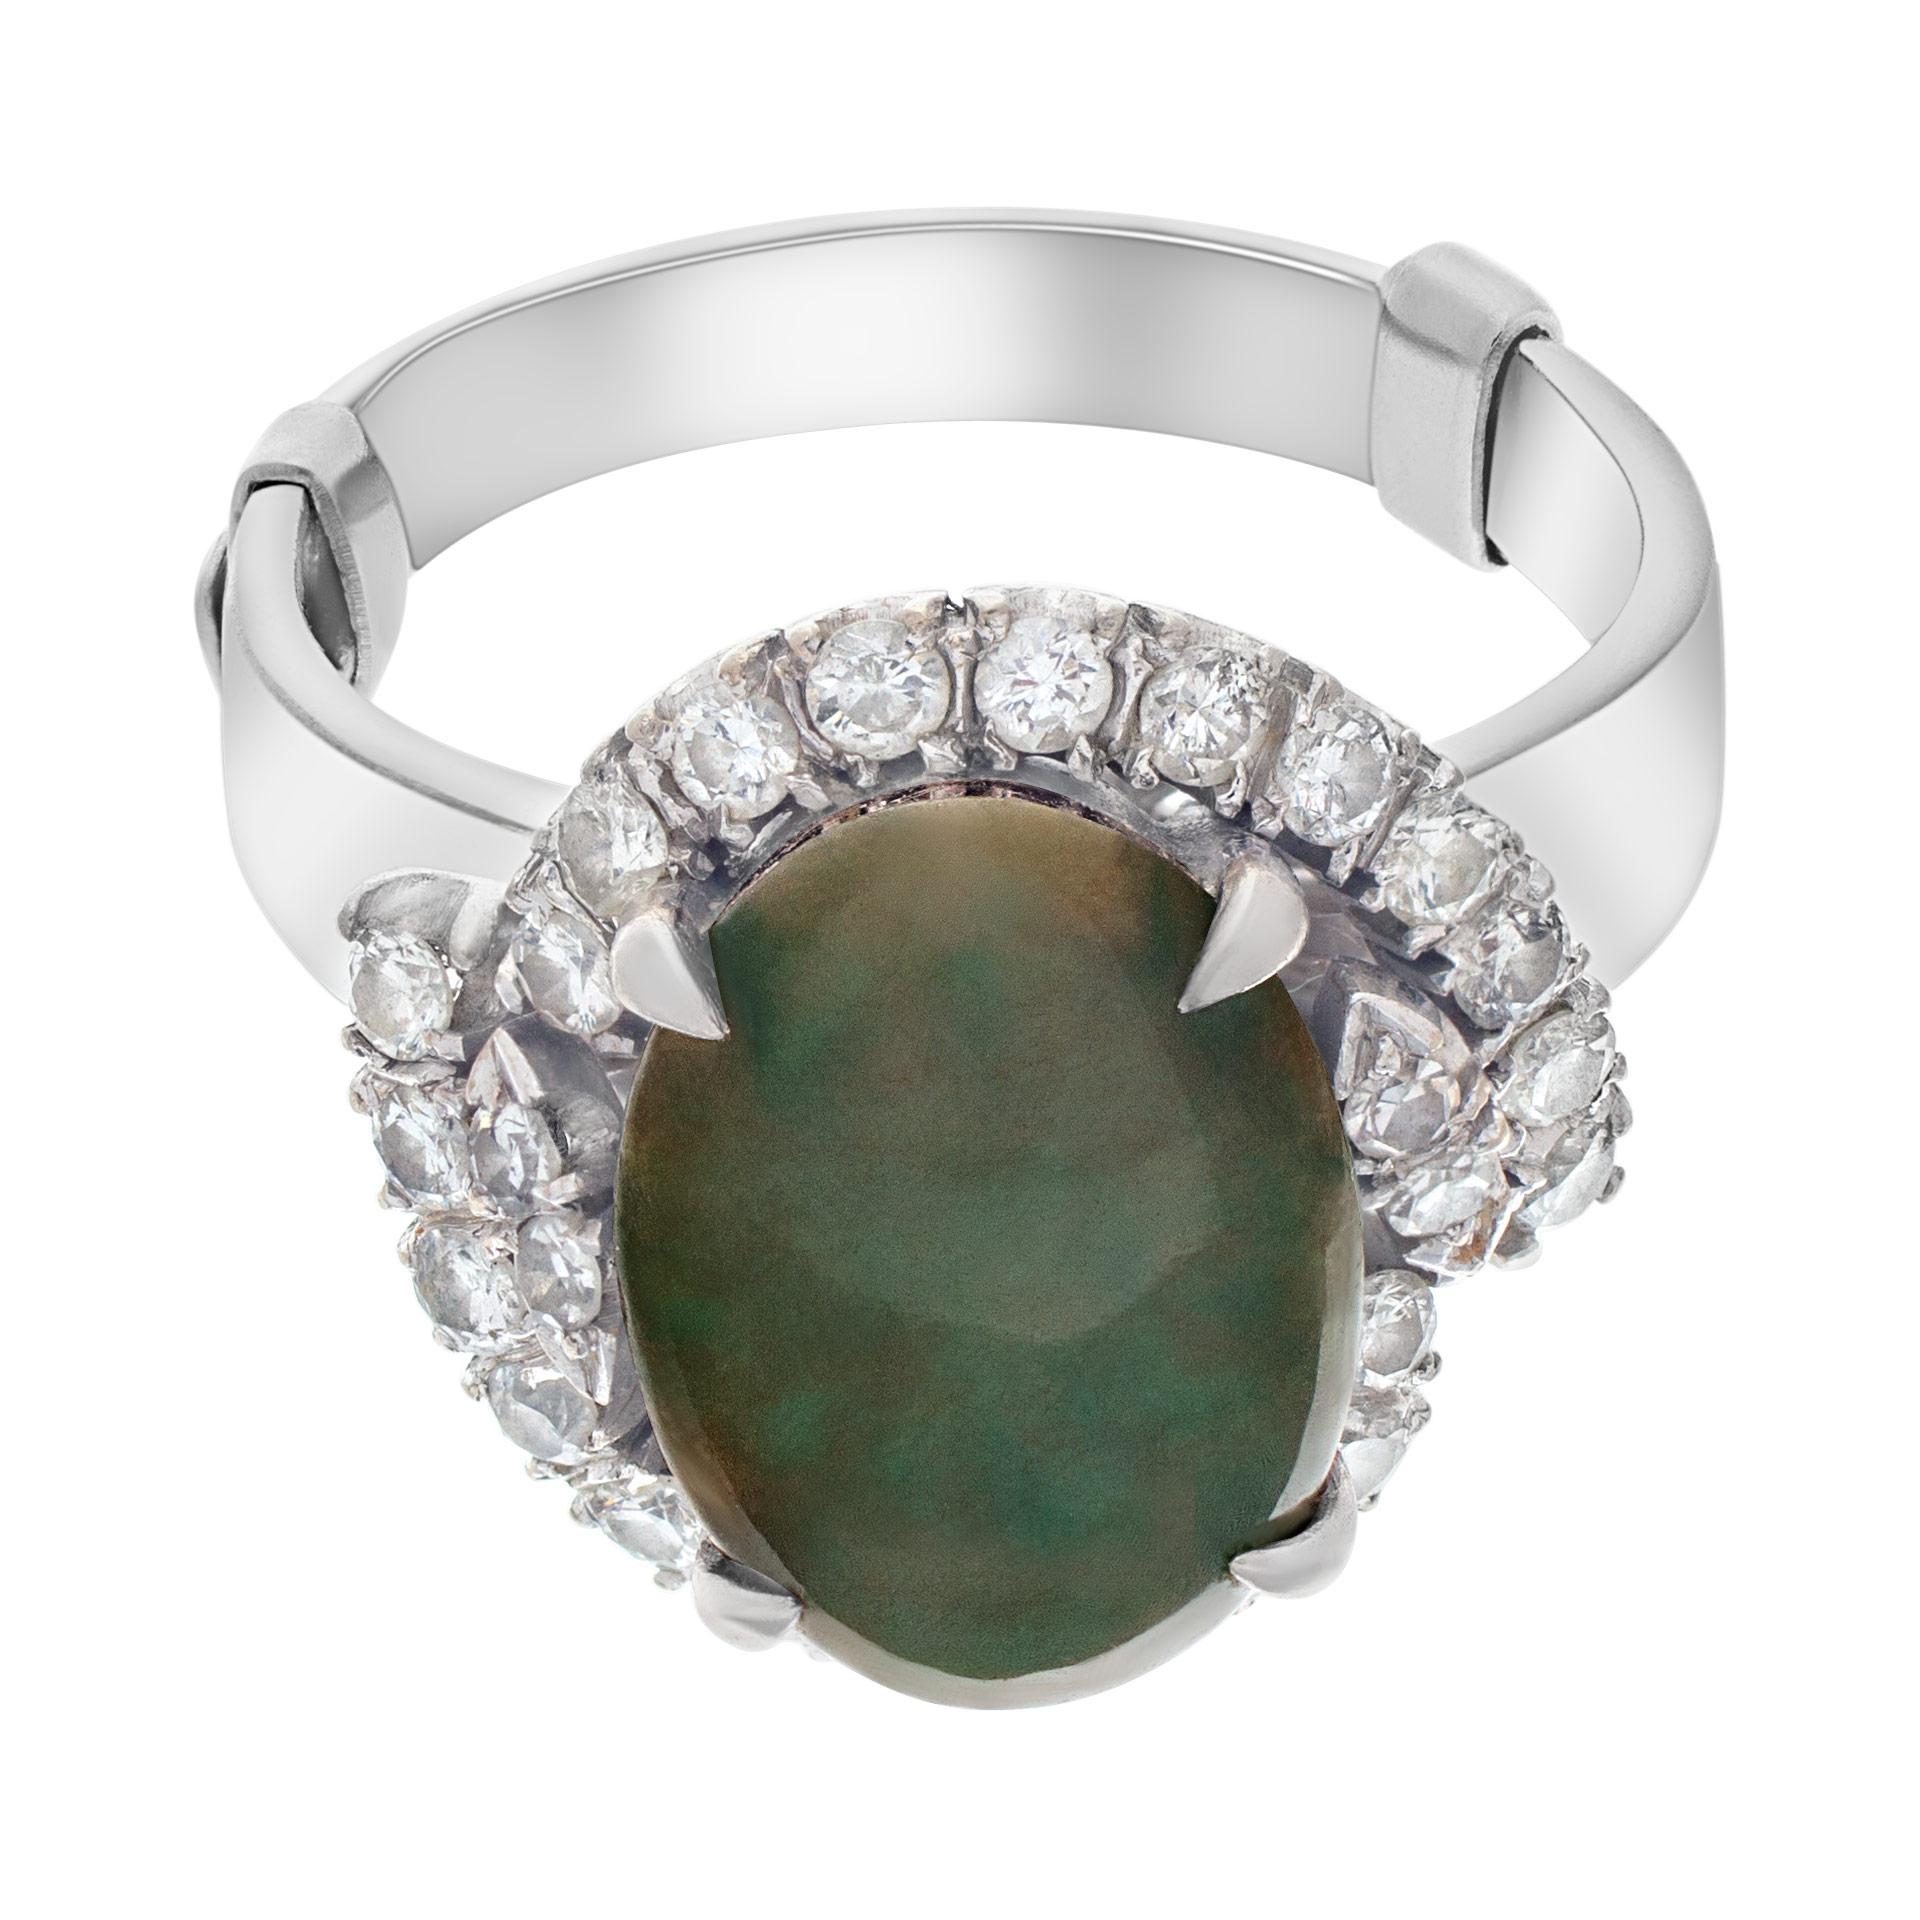 PRIX DE VENTE ESTIMATIF : 2 880 $ VOTRE PRIX : 1 800 $ - Bague en jade vintage en or blanc 14k avec environ 0,50 cts de diamants ronds. Taille 7,5.

